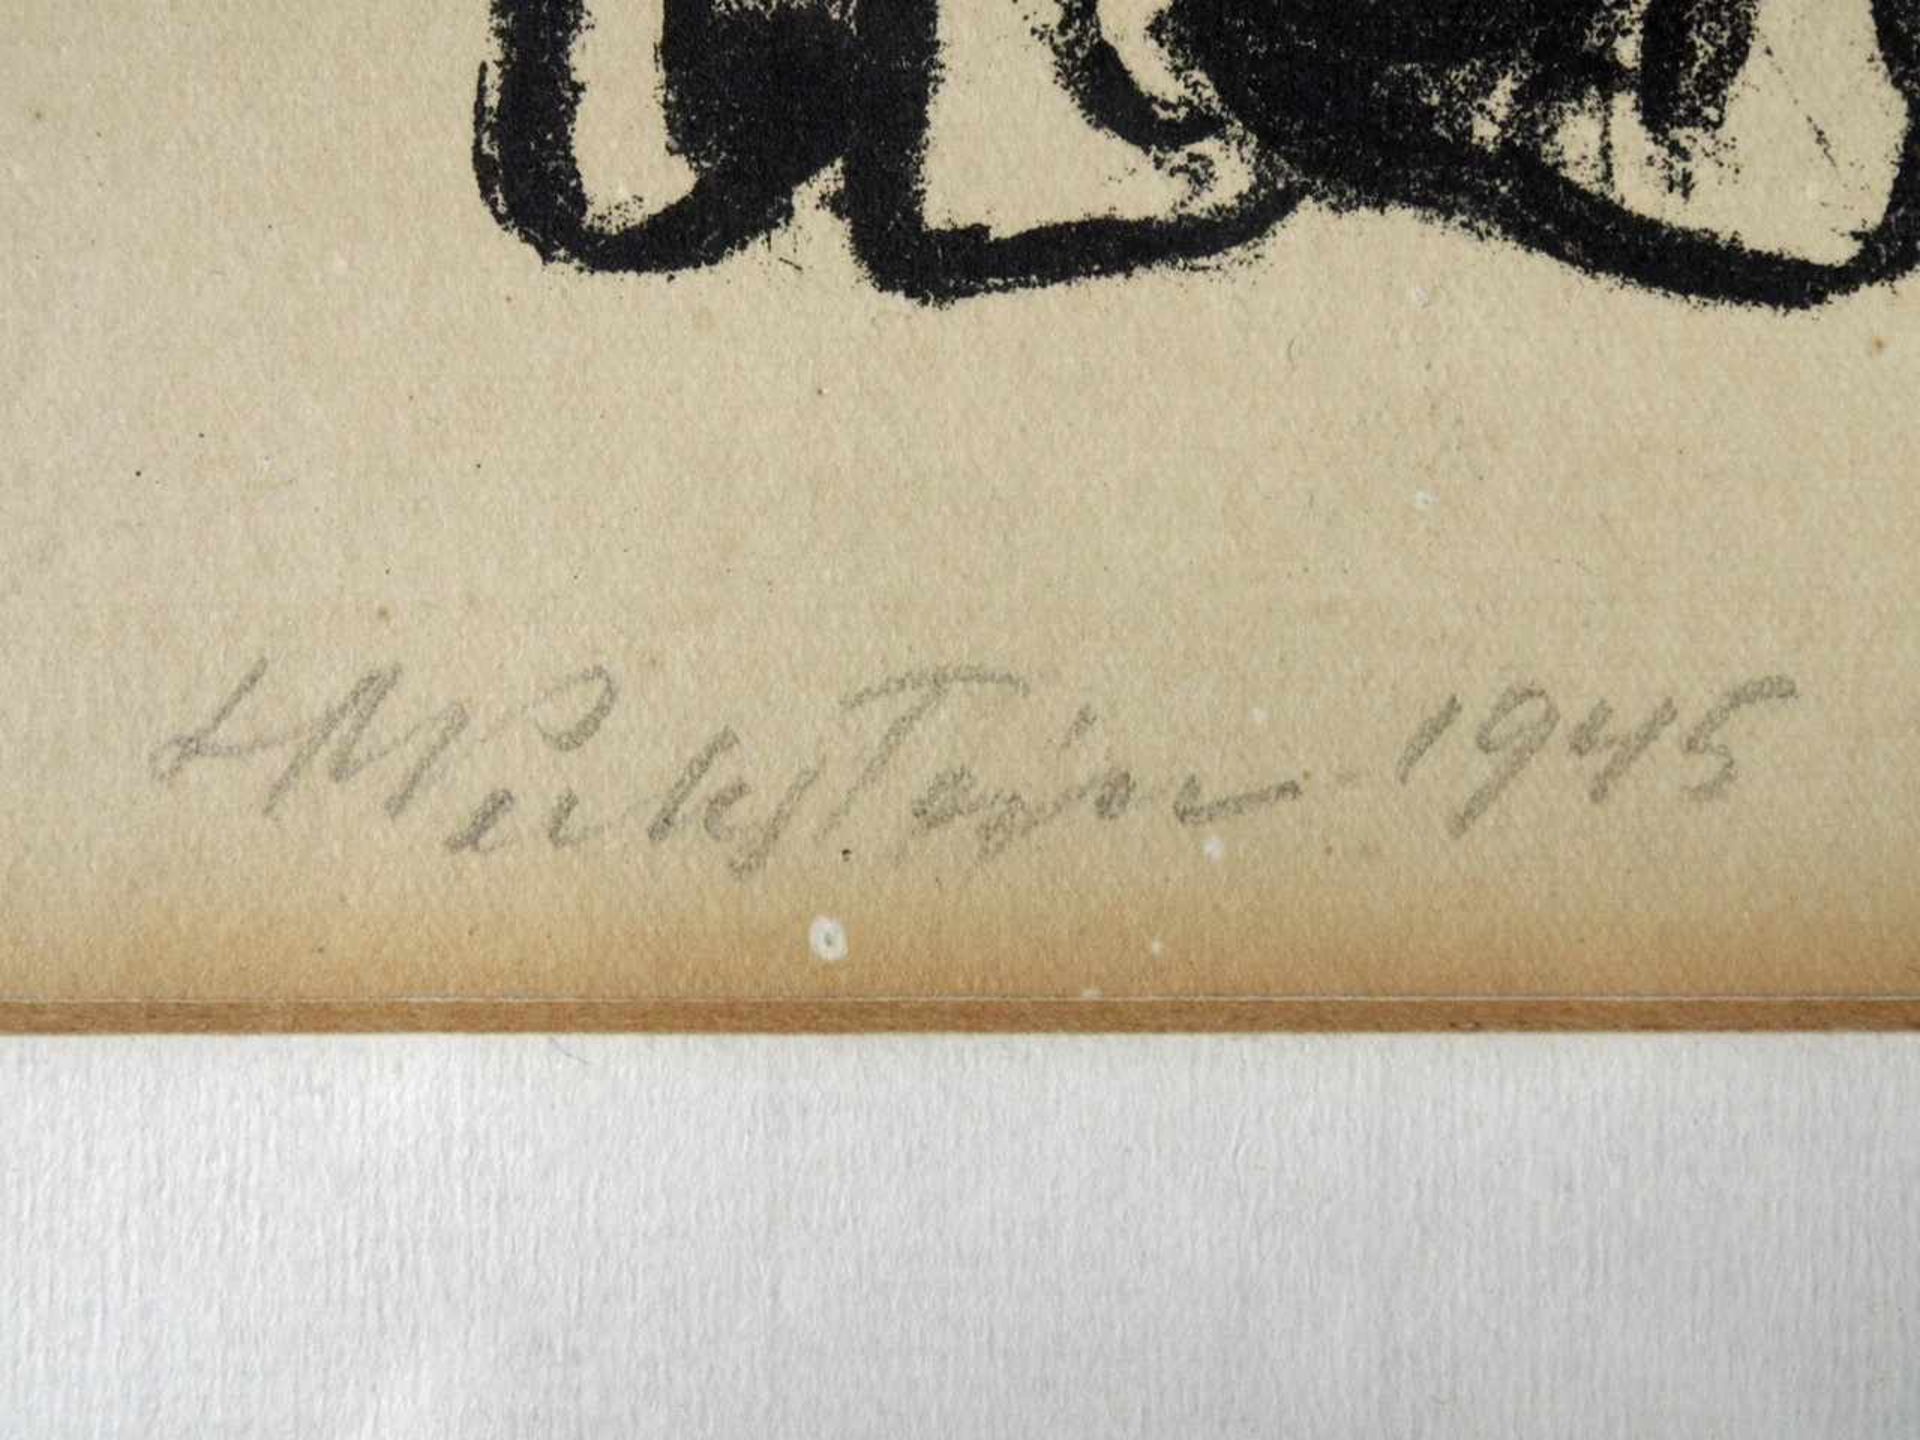 PECHSTEIN, Max1881-1955Italienerinnen am BrunnenLithographie, signiert und datiert 1945 unten links, - Bild 3 aus 3